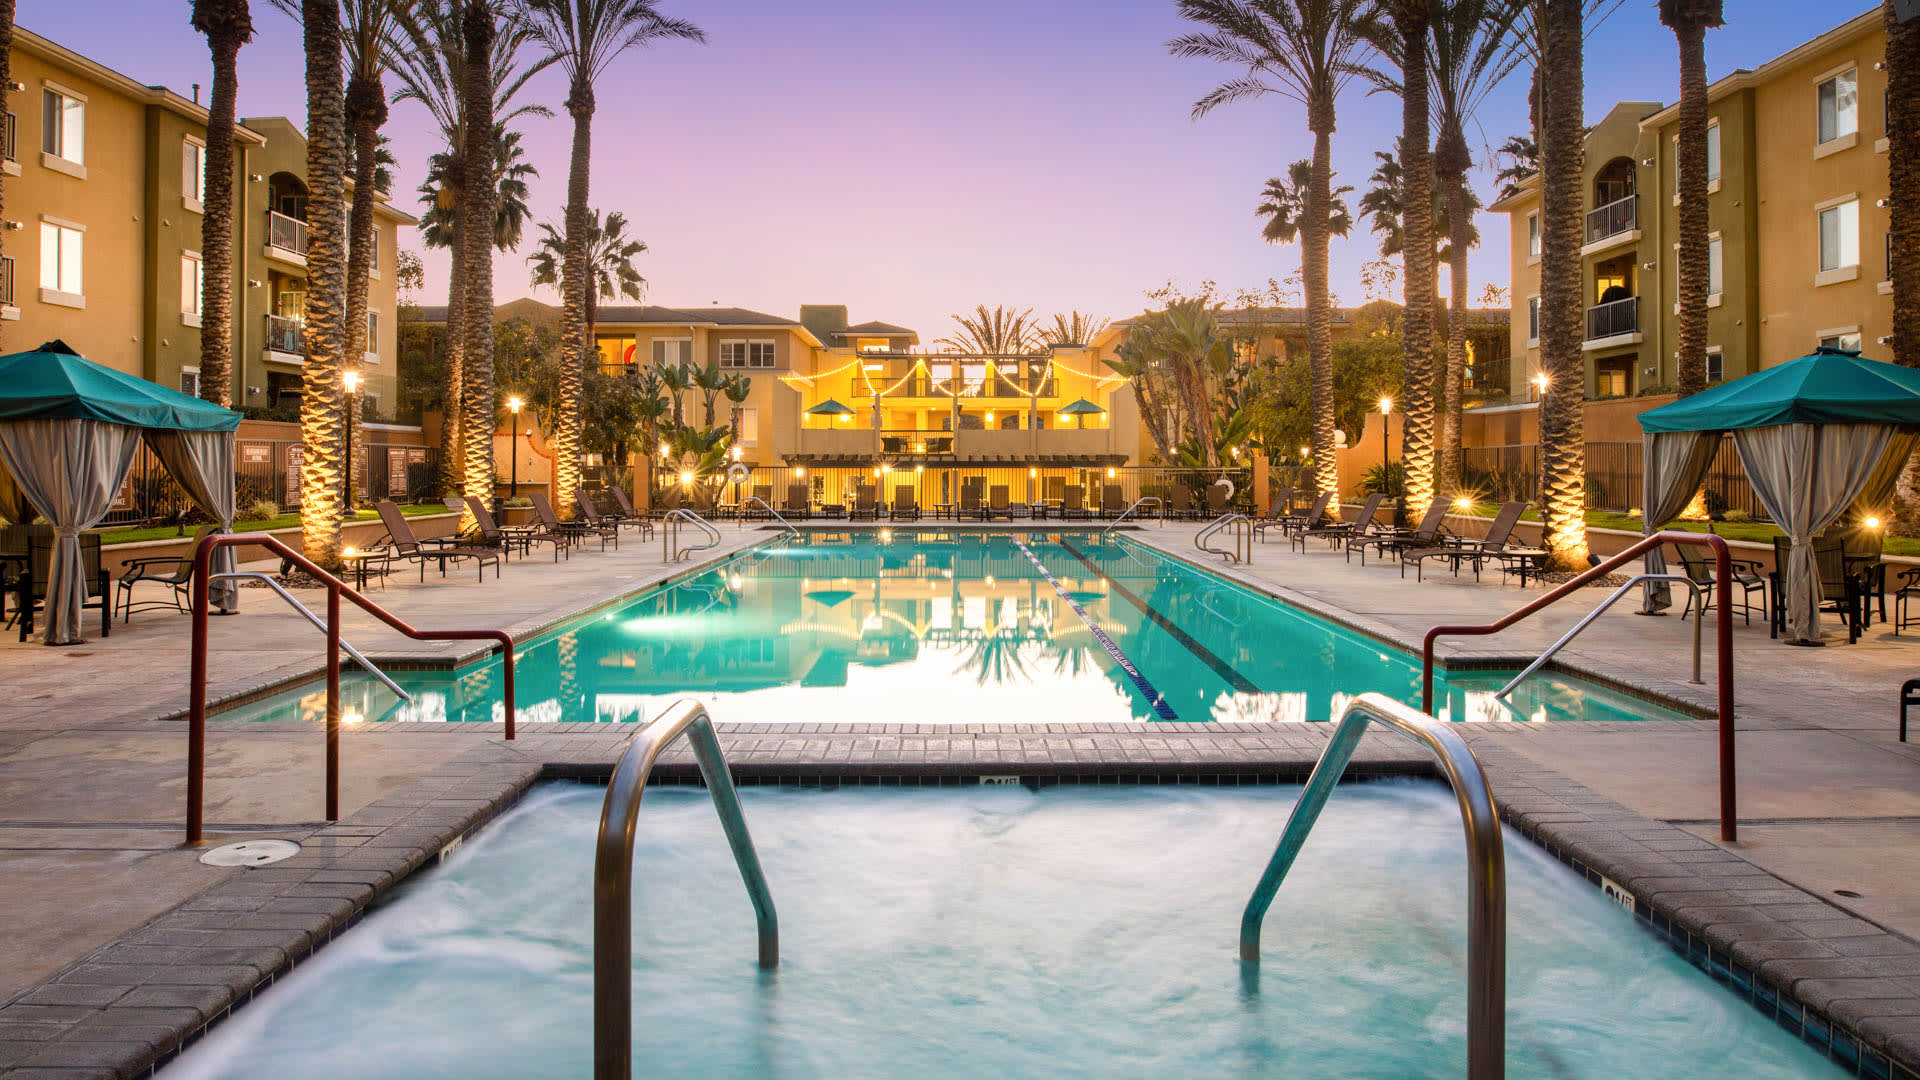 Mariposa at Playa del Rey Apartments - Swimming Pool and Hot Tub 